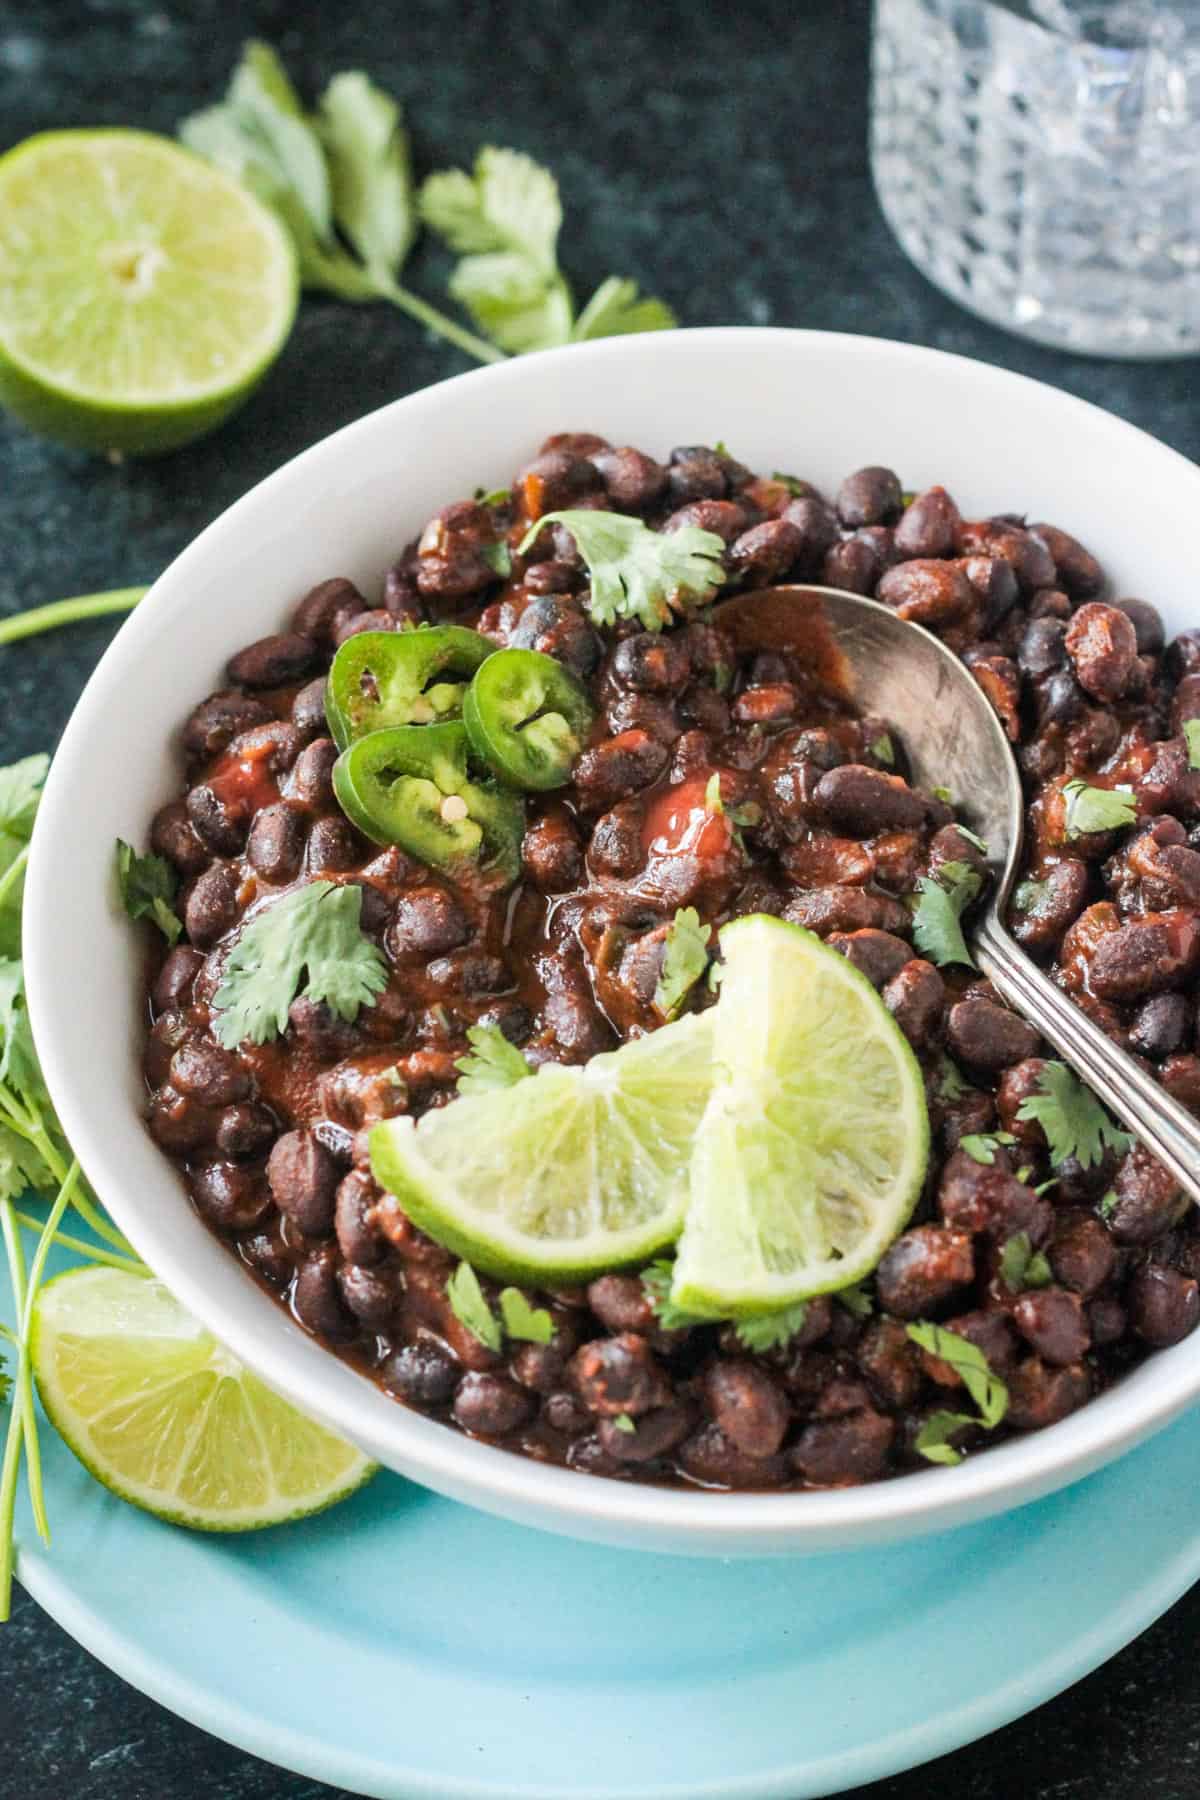 Metal serving spoon in a bowl of spicy seasoned black beans.